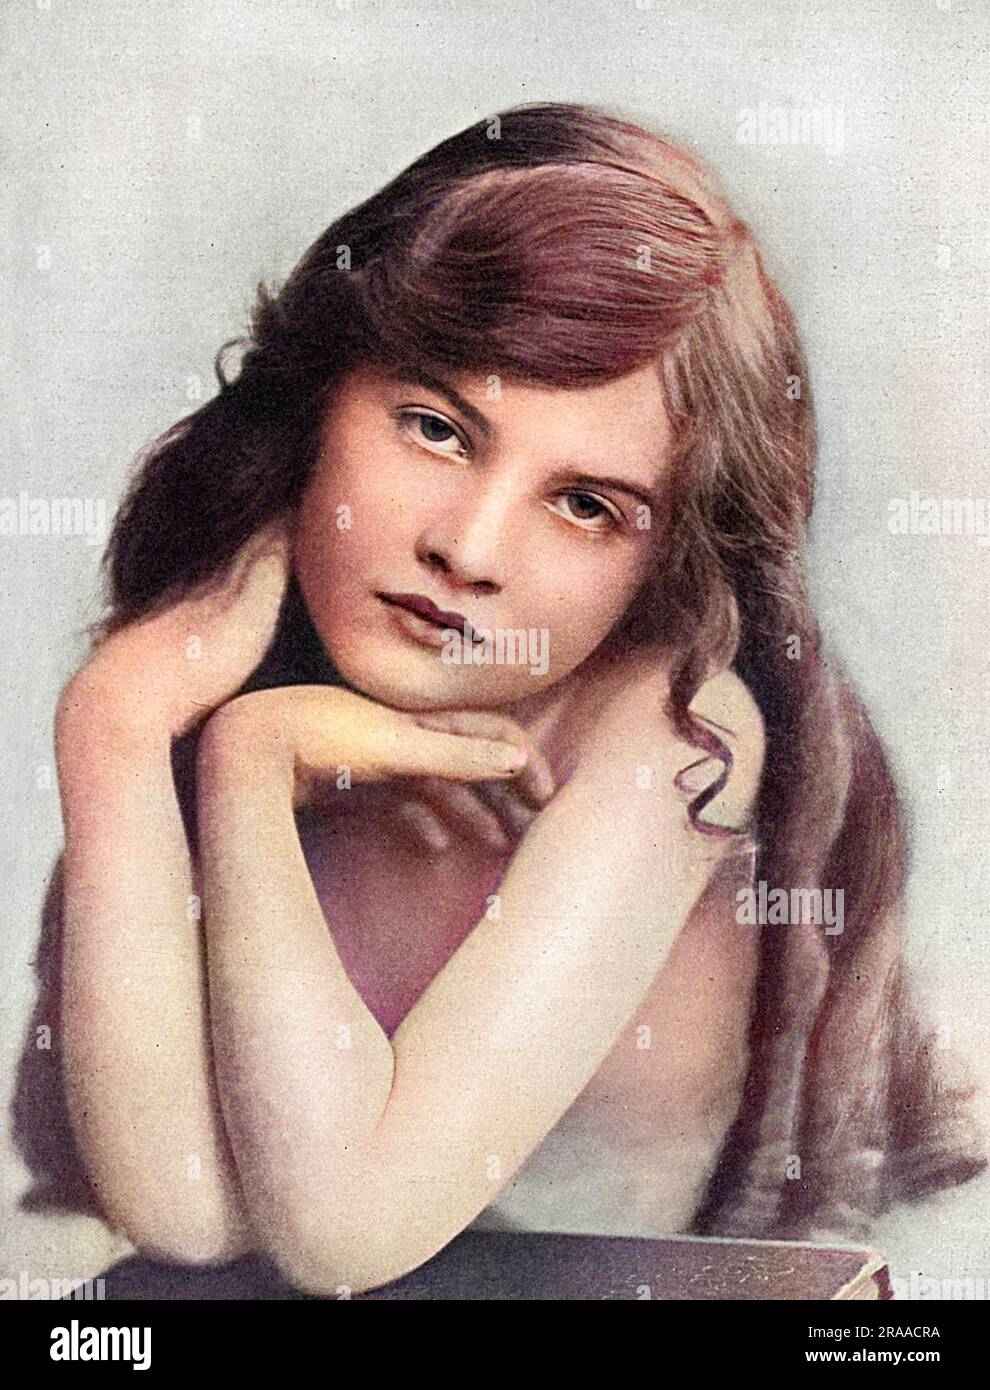 Estelle Dudley, petite actrice, photographiée dans le magazine Tatler, à l'époque, elle se produit dans un matinee patriotique au Kingsway Theatre. Date: 1917 Banque D'Images